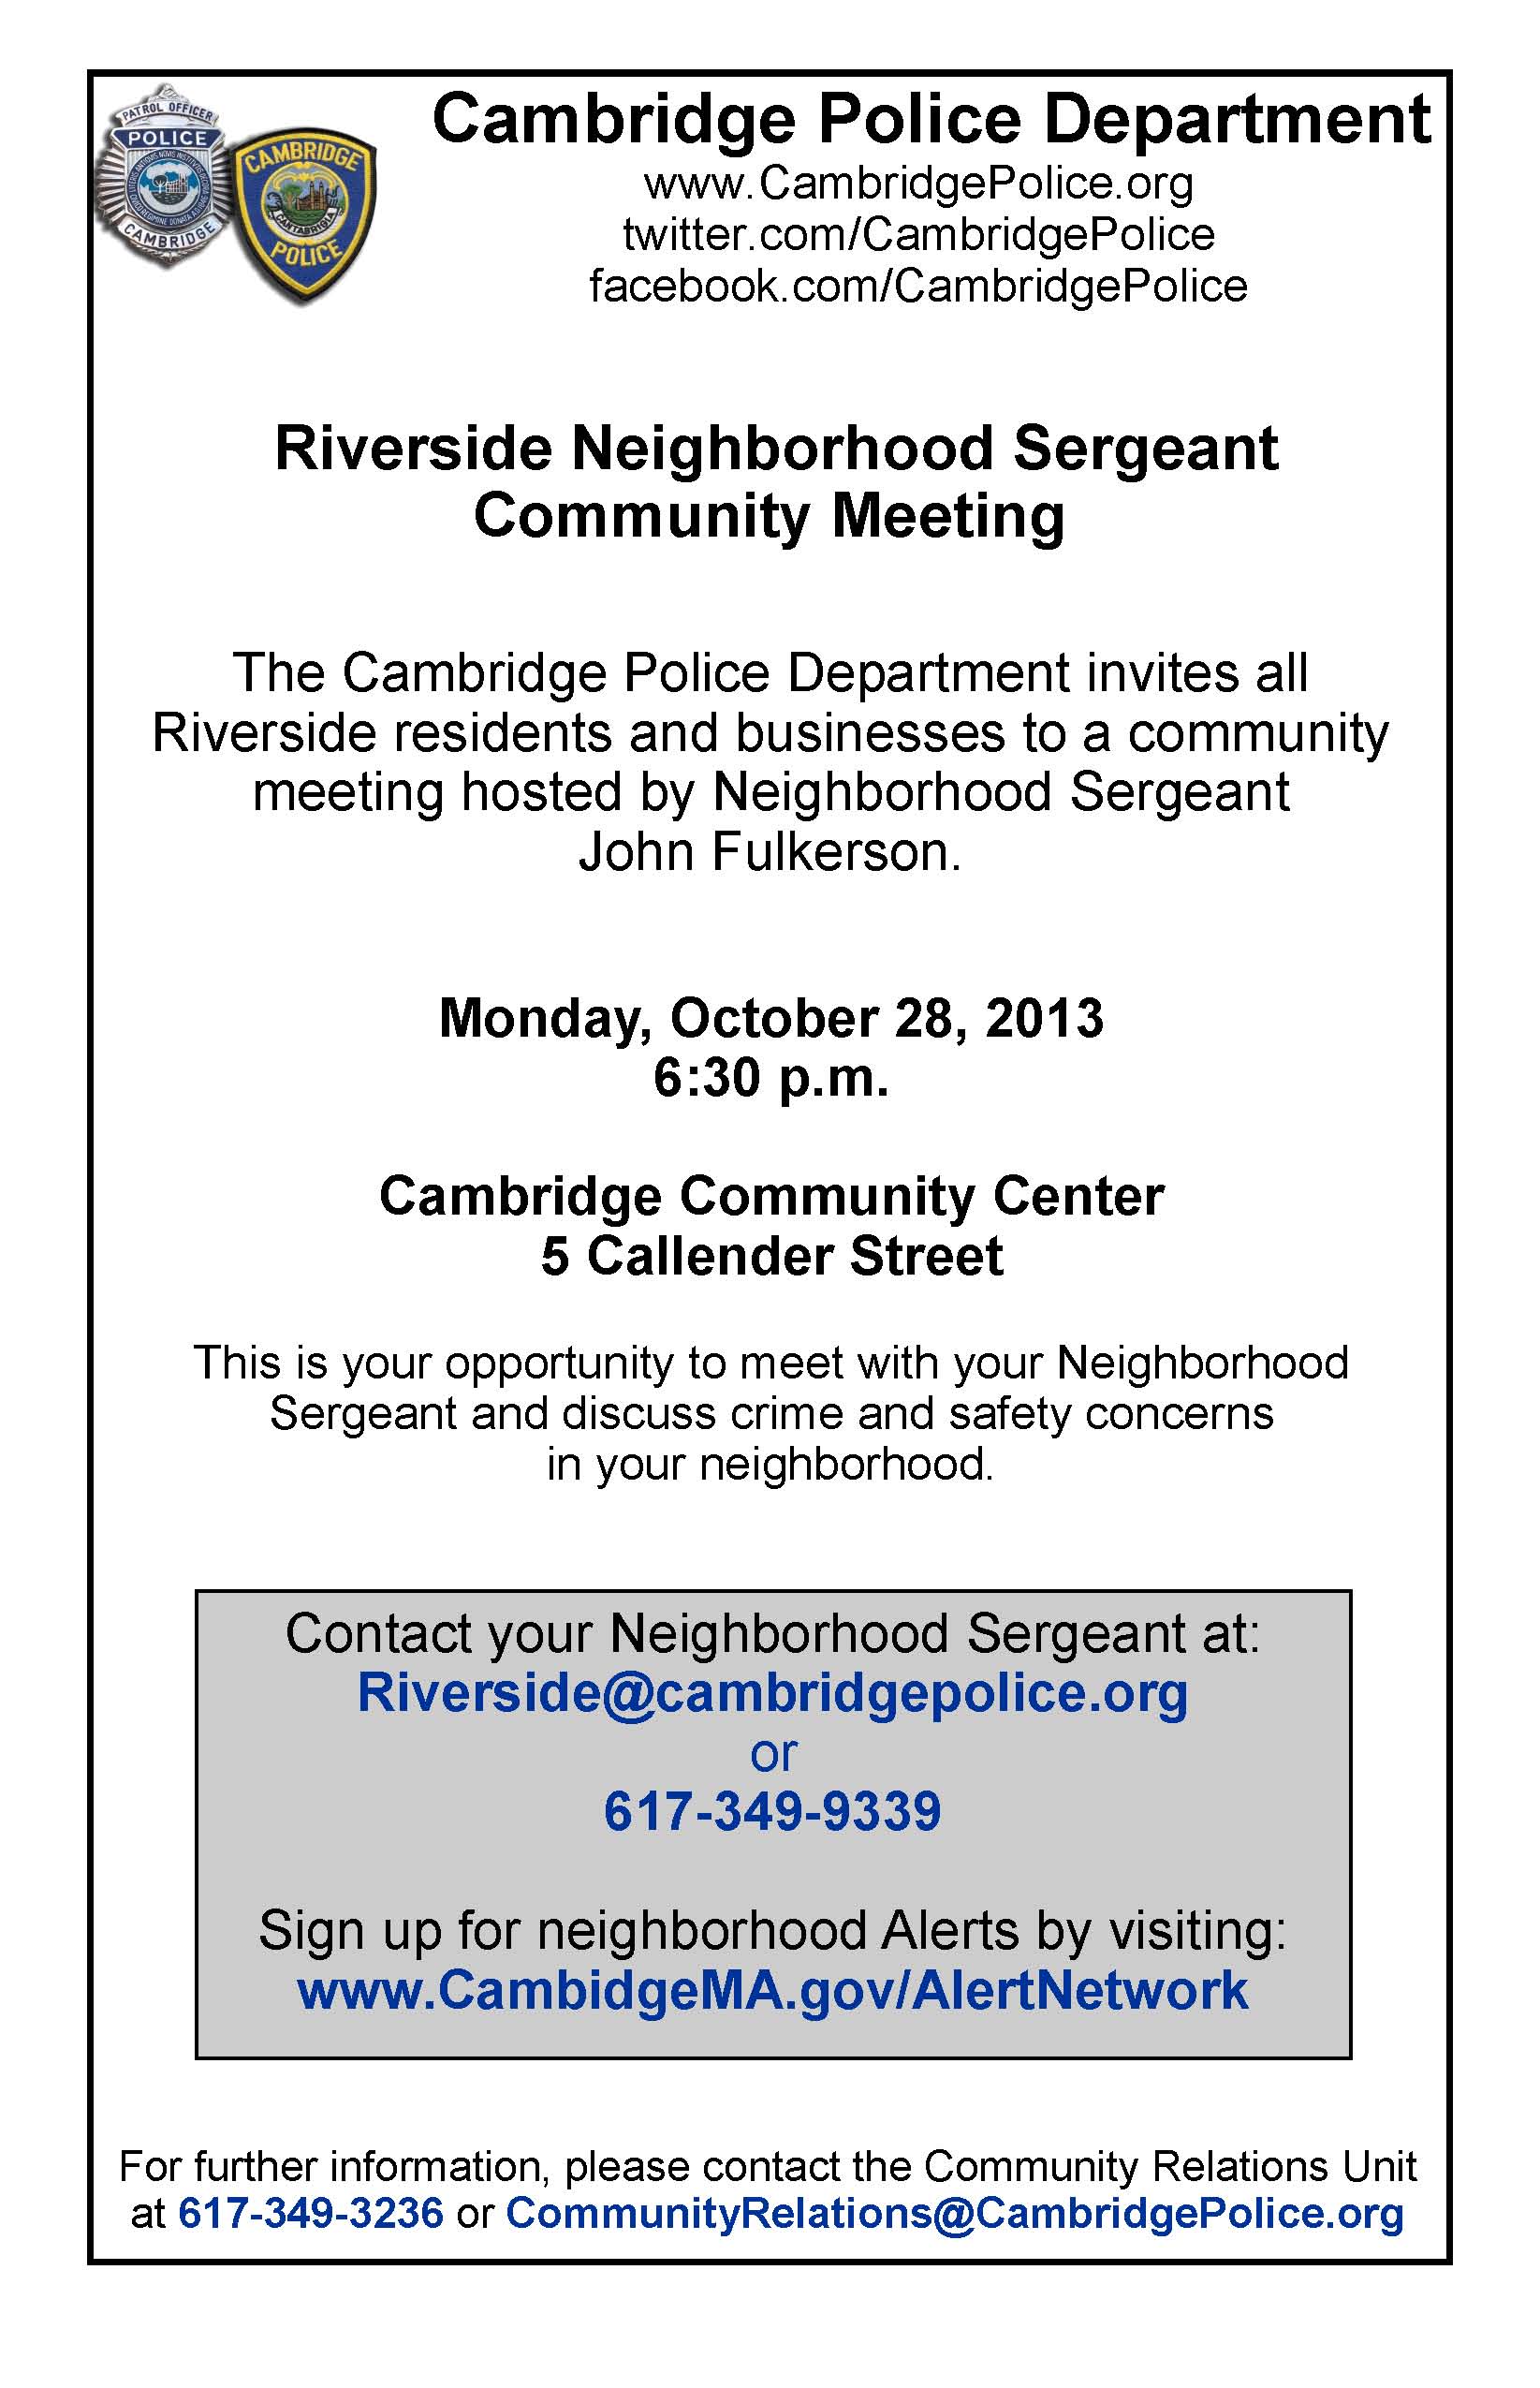 Neighborhood Meeting Flyer